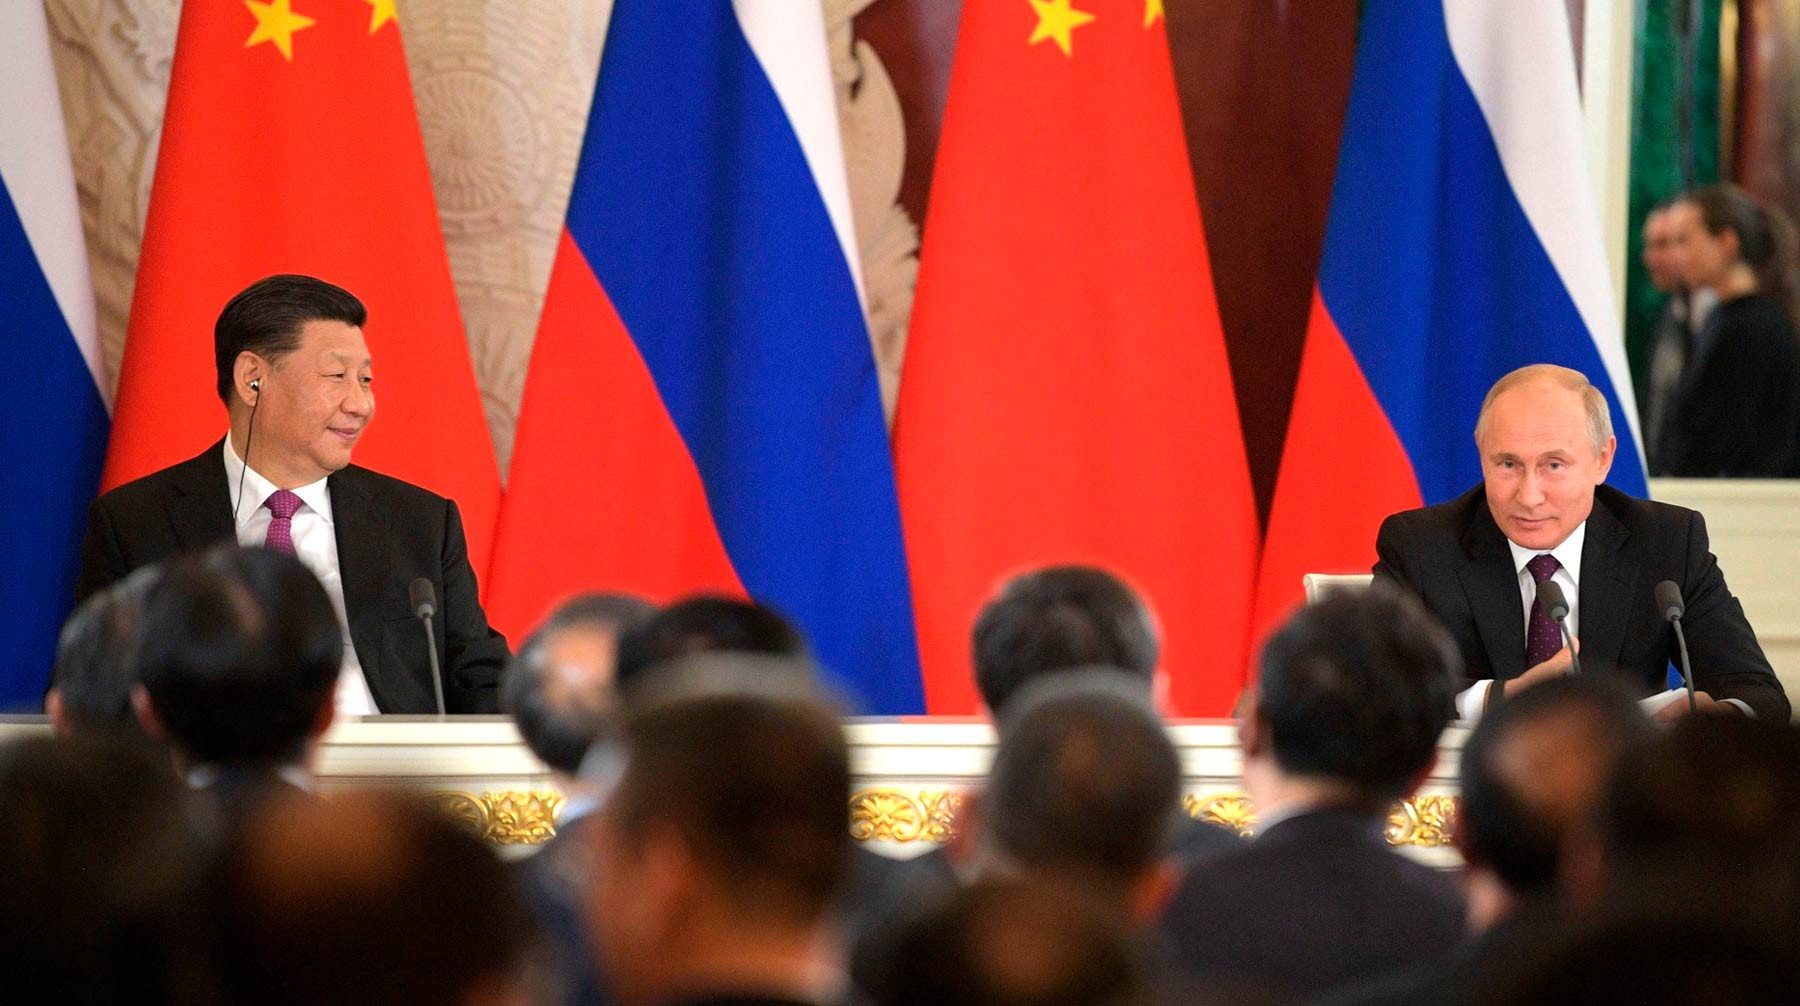 Dailystorm - Евросоюз намерен противостоять возросшему влиянию России и Китая на Балканах